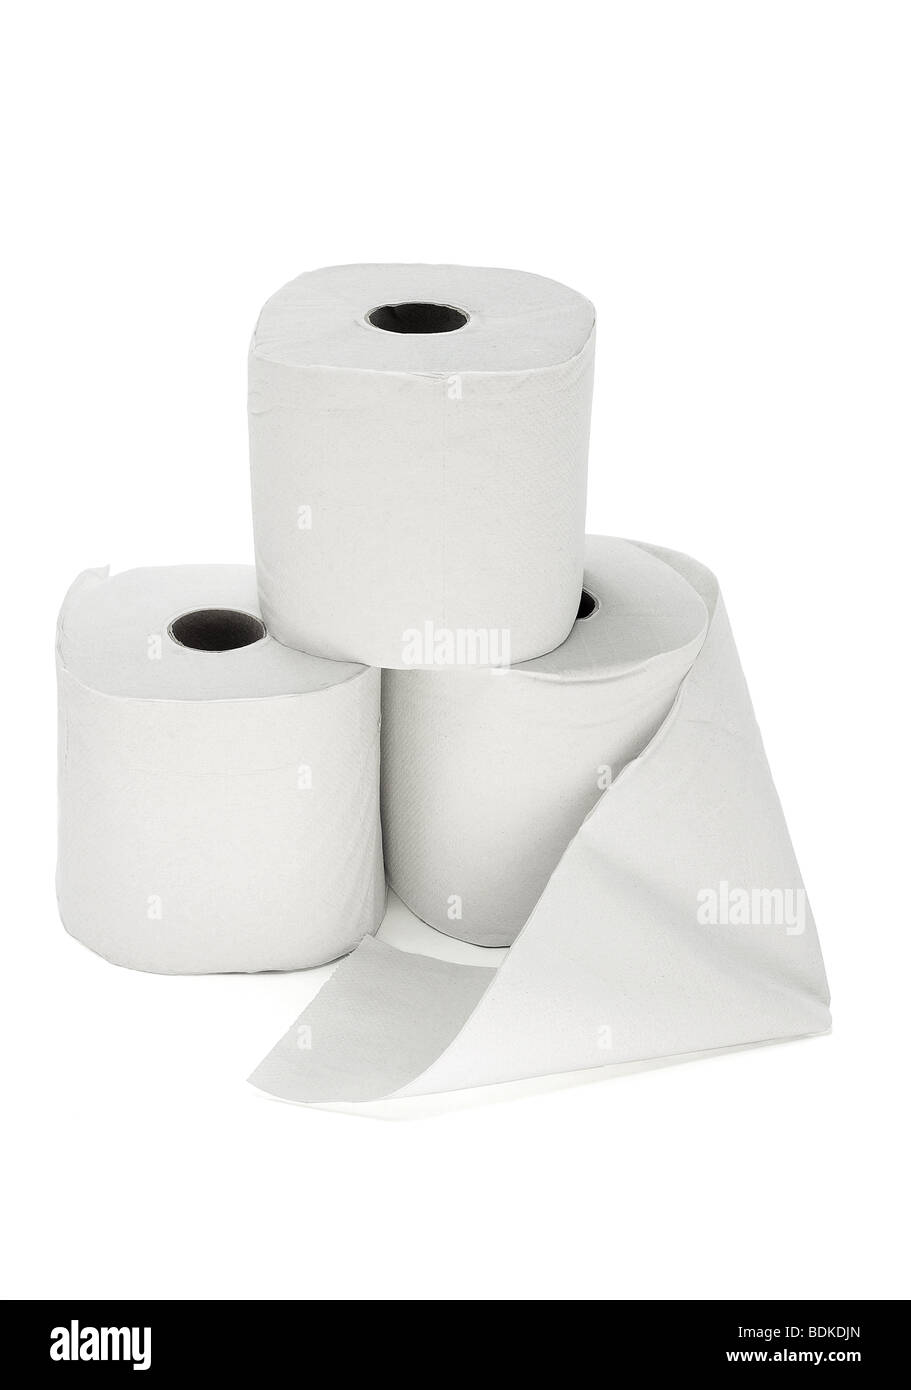 Tre rotoli di carta igienica disposti su sfondo bianco Foto Stock